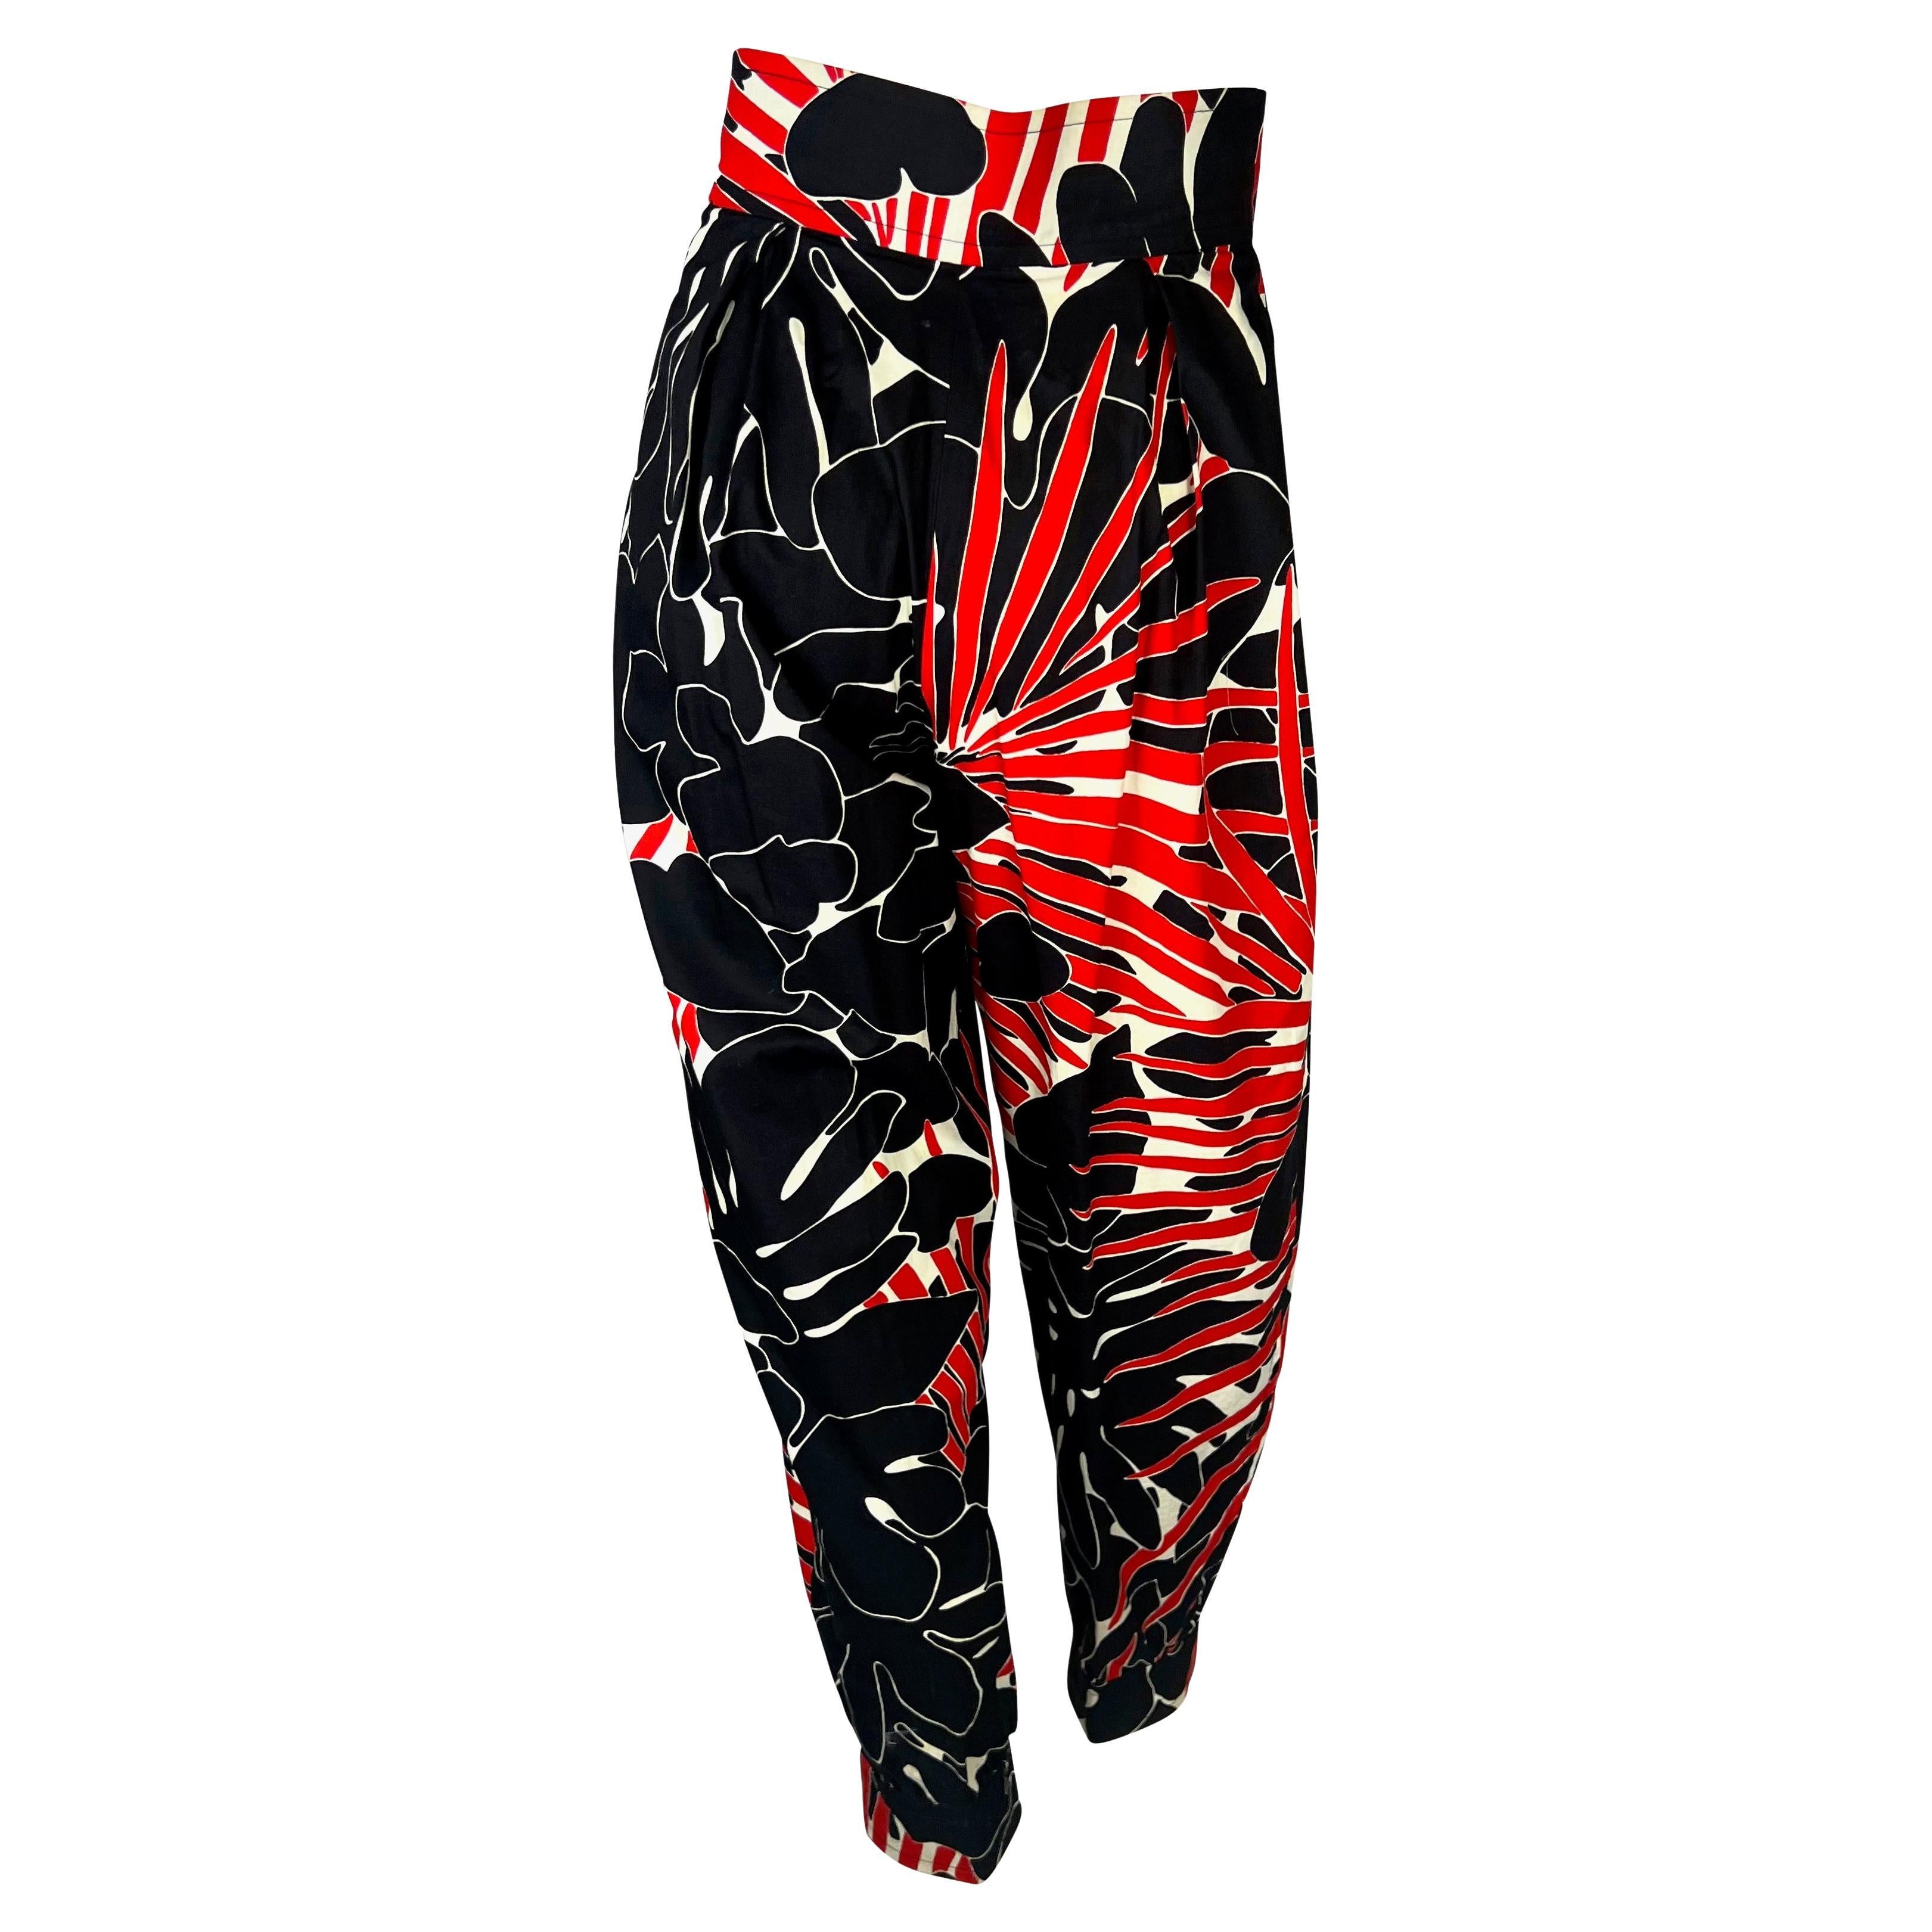 S/S 1985 Saint Laurent Rive Gauche Runway Black Red Floral Print Wide-Leg Pants For Sale 1